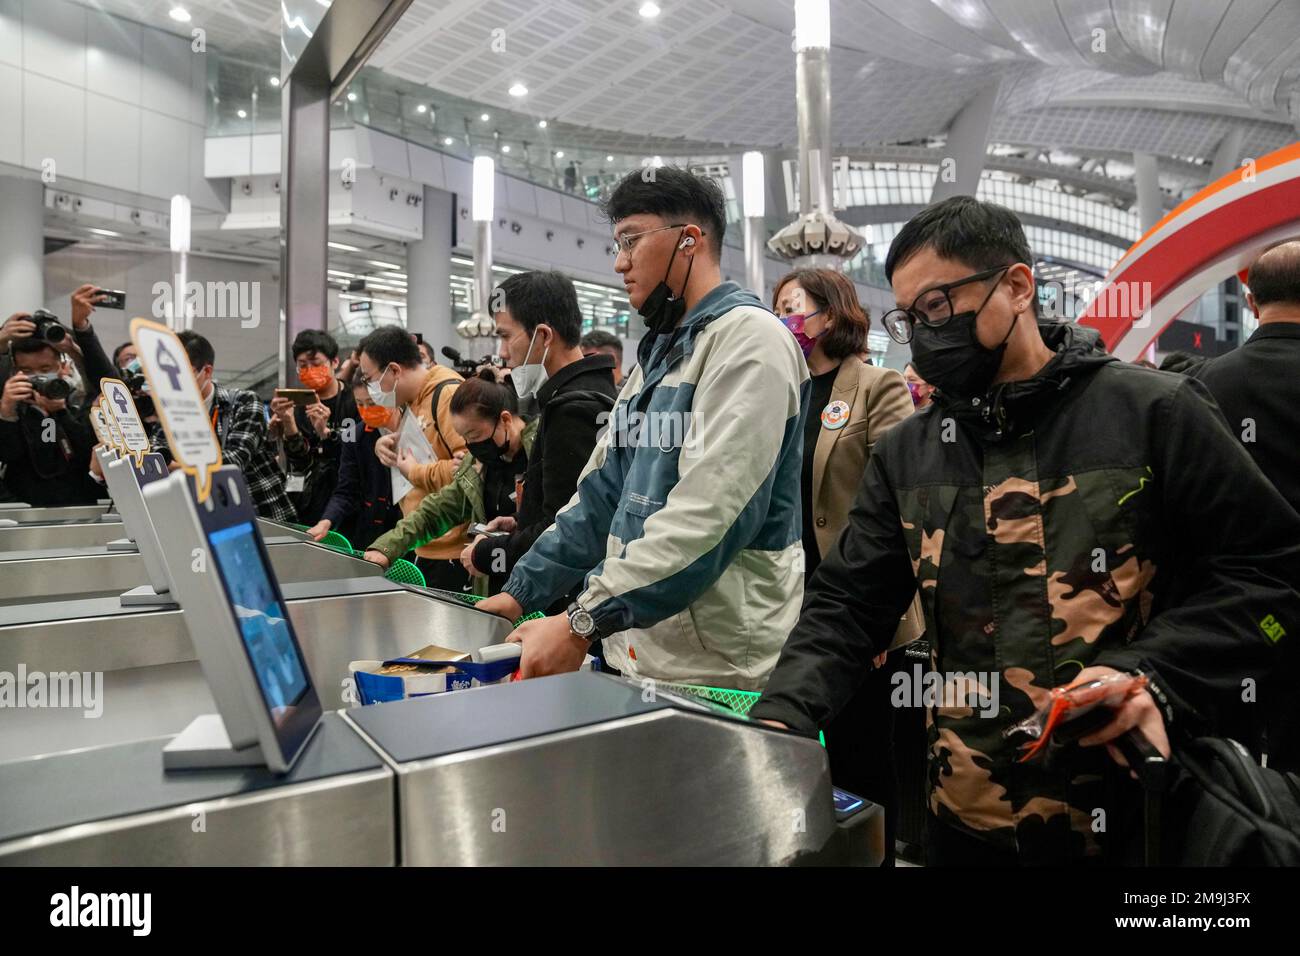 Le premier lot de passagers sortants attend de monter à bord du train pour la Chine continentale à la gare de Hong Kong West Kowloon en Jordanie. La liaison ferroviaire à grande vitesse de Hong KongHH reprend pour la première fois en trois ans après que Pékin ait assoupli cette restriction. La jambe de Hong Kong a été en service pendant environ 16 mois avant la fermeture en janvier 2020 en raison de la pandémie Covid-19. 15JAN23 SCMP / Sam Tsang Banque D'Images